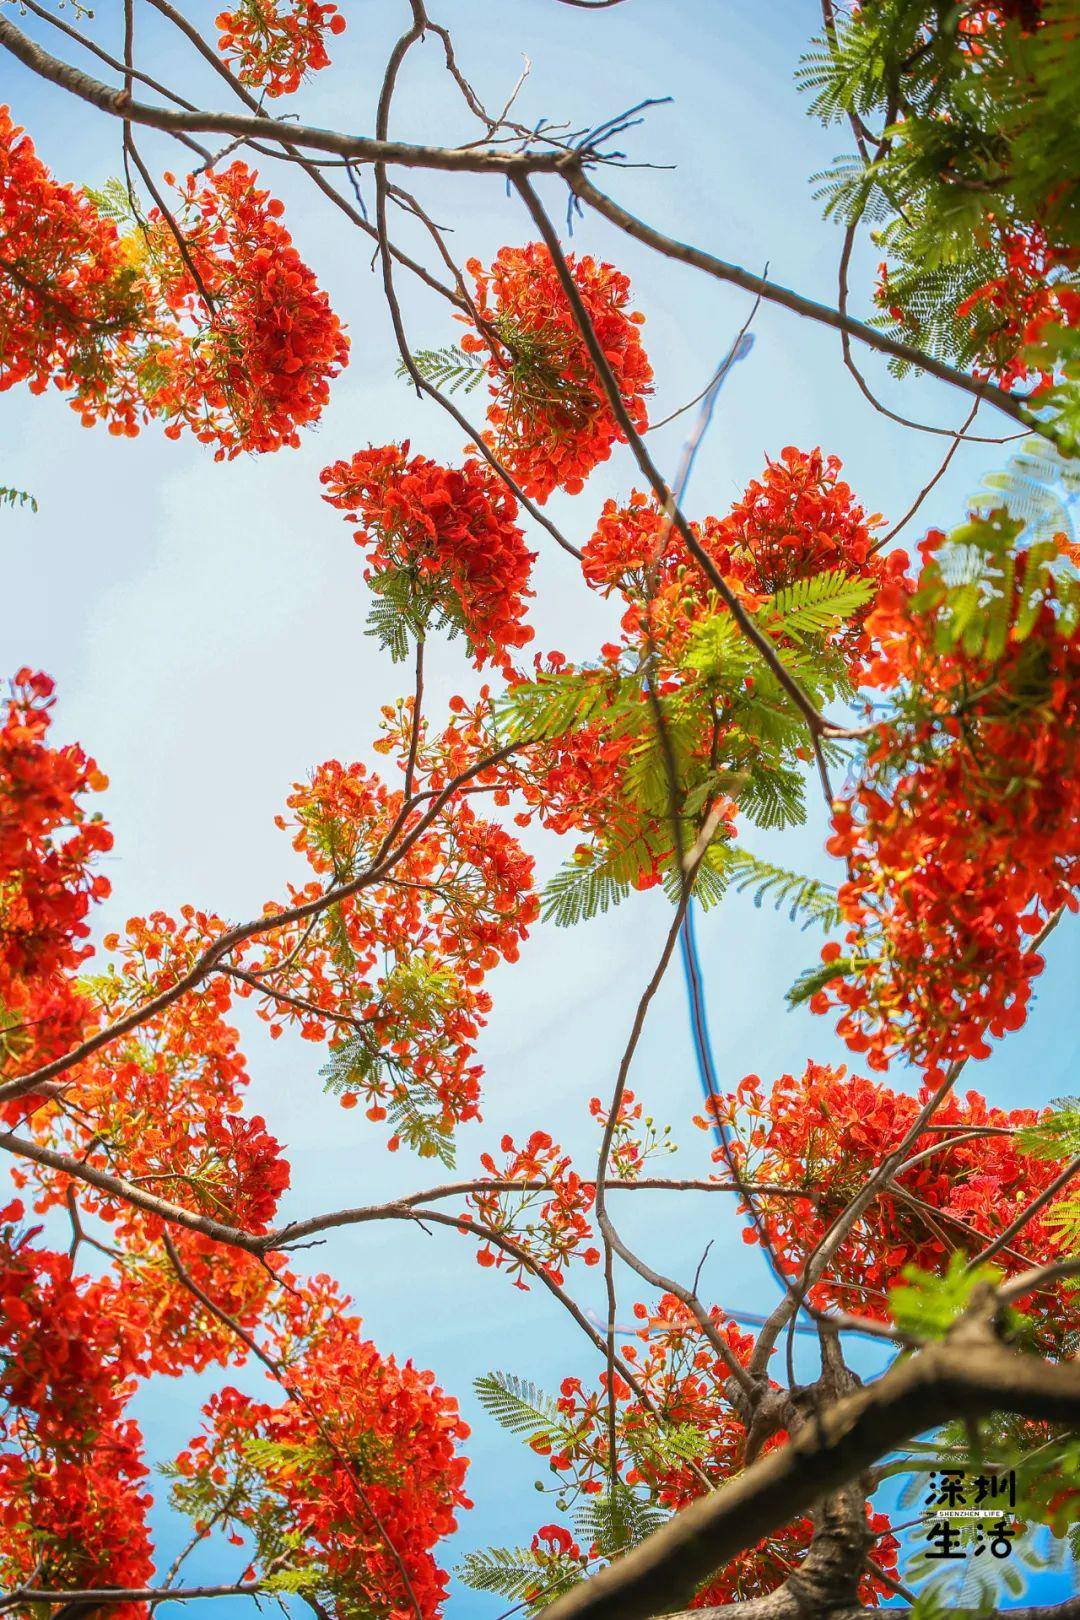 "叶如飞凰之羽,花若丹凤之冠" 凤凰木是世界上色彩最鲜艳的树木之一